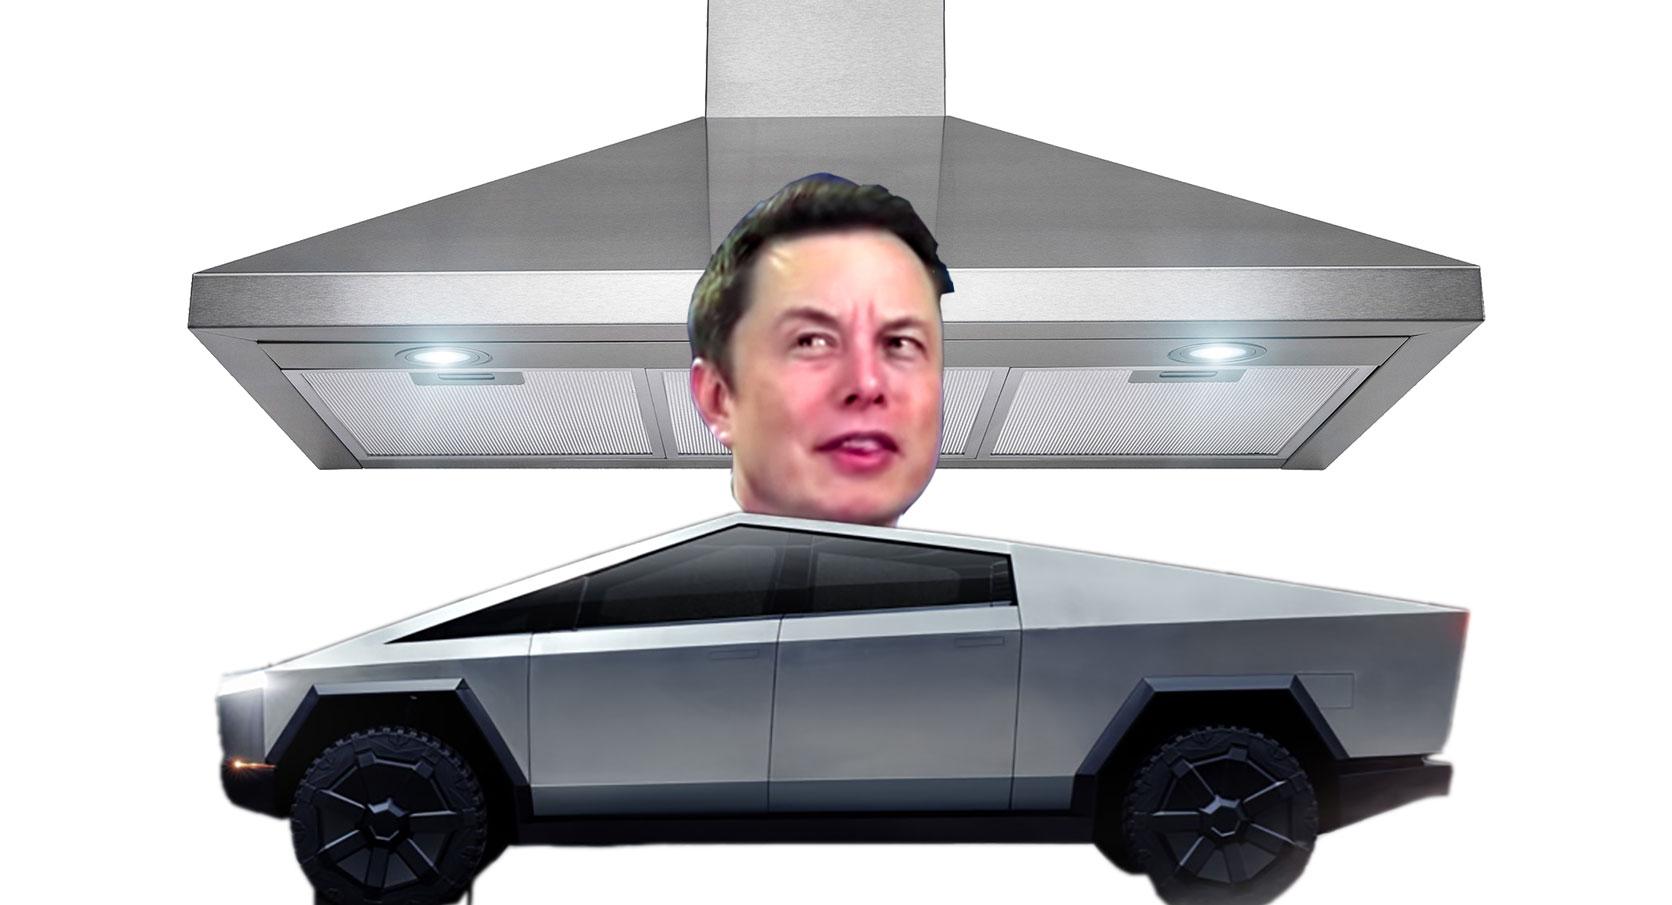 Tesla Cybertruck Meme - KibrisPDR